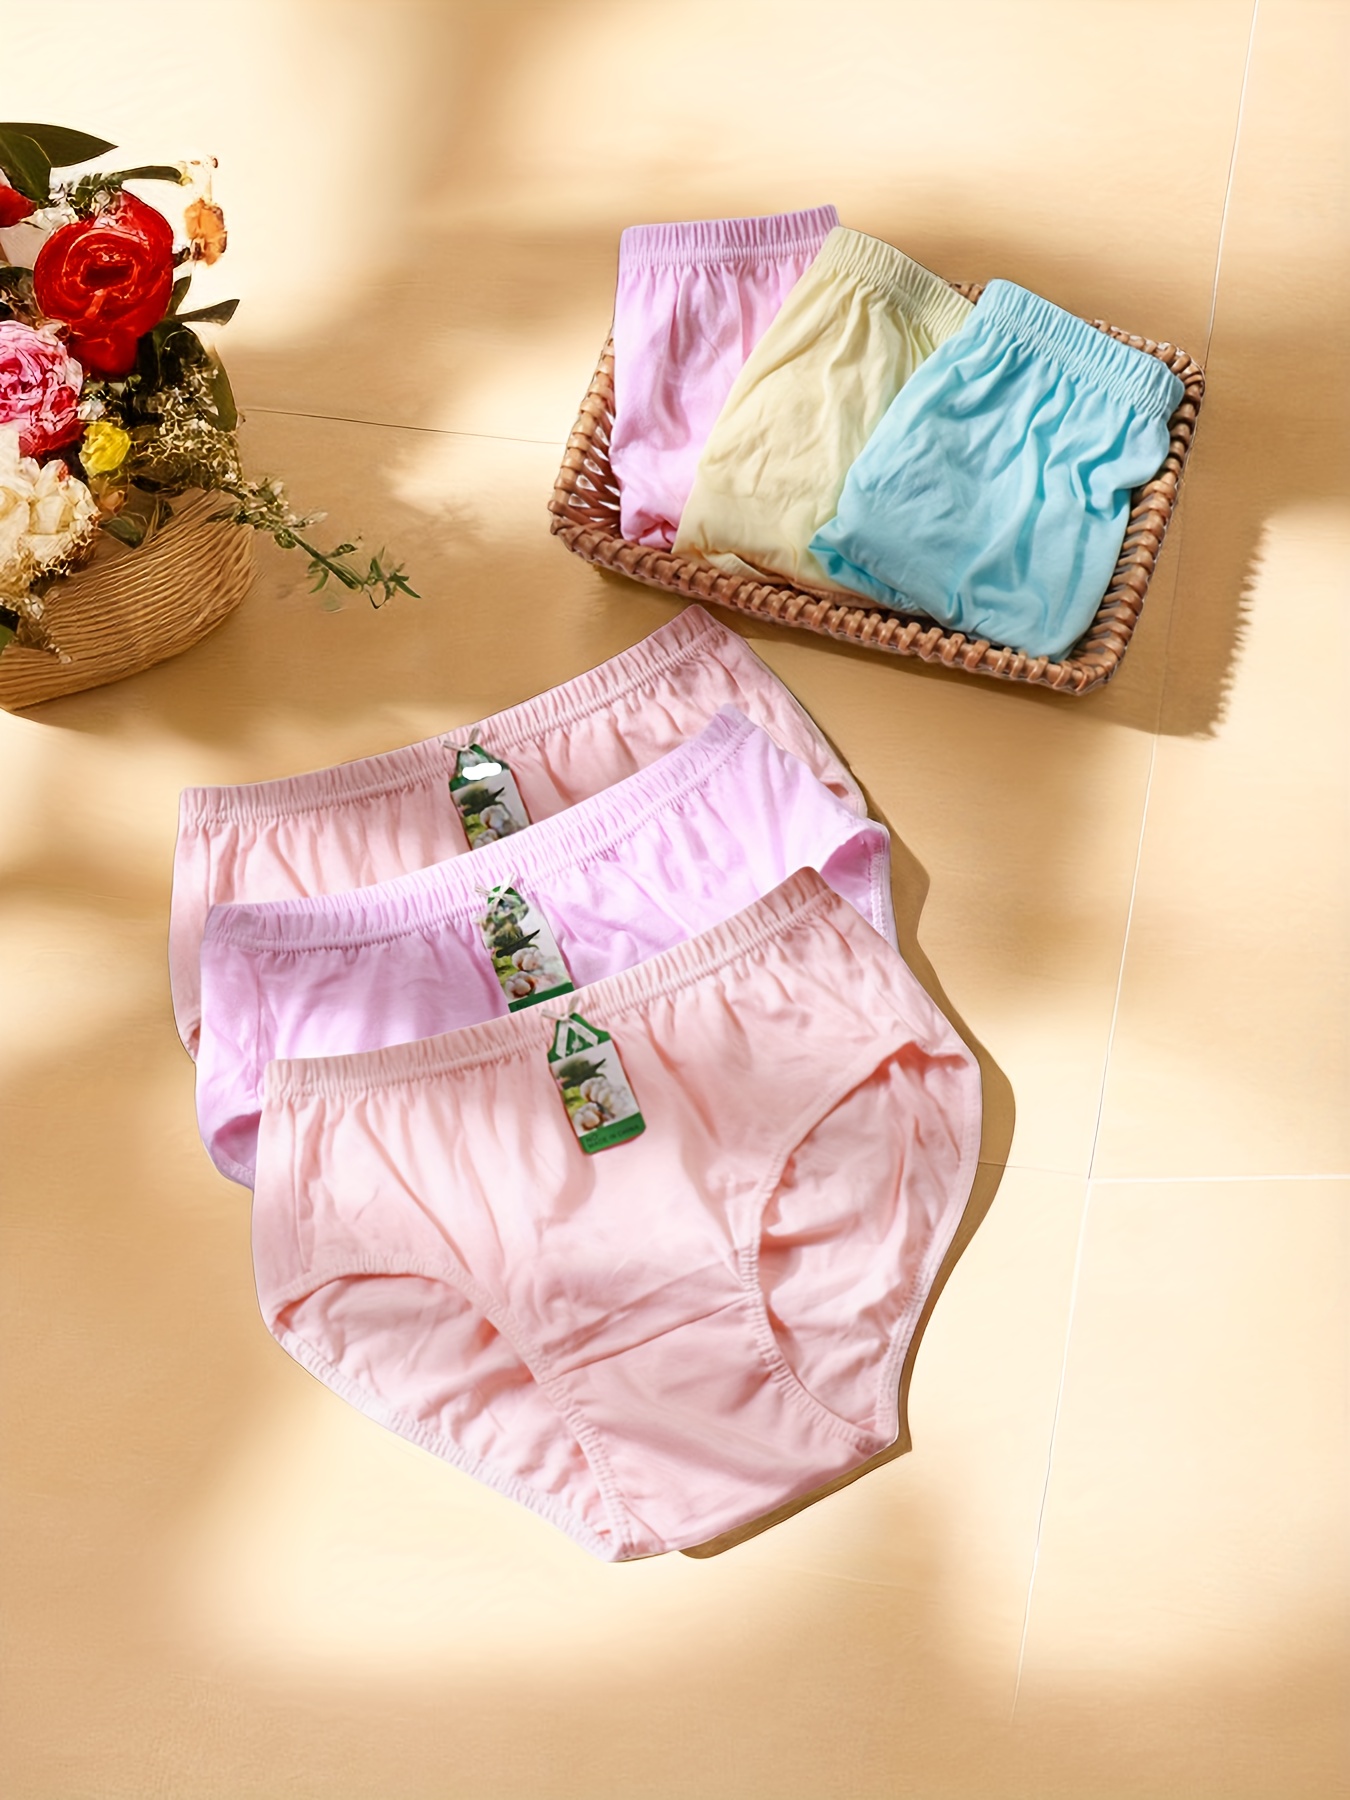 Cotton Underwear Women Briefs - Temu Canada